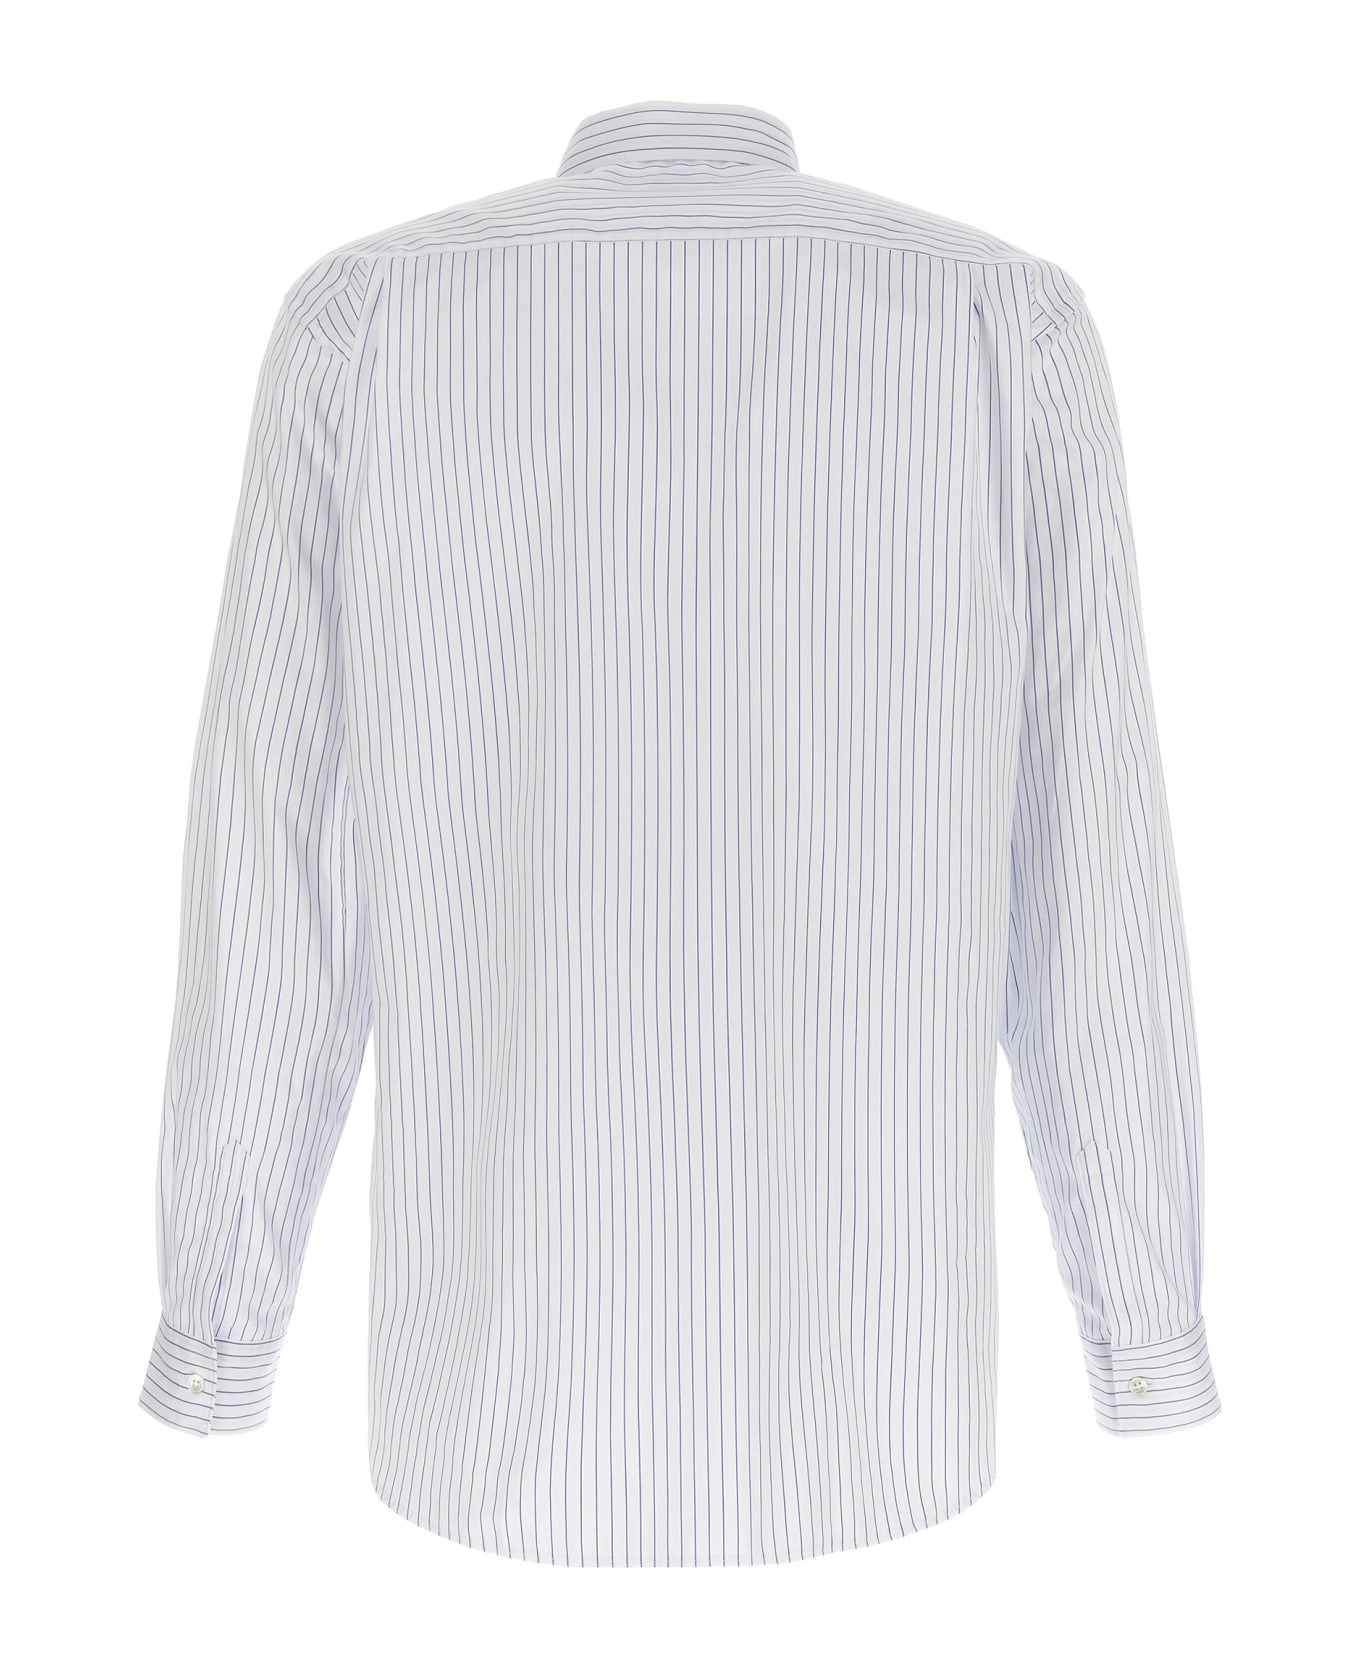 Comme des Garçons Shirt Striped Shirt - Light Blue シャツ